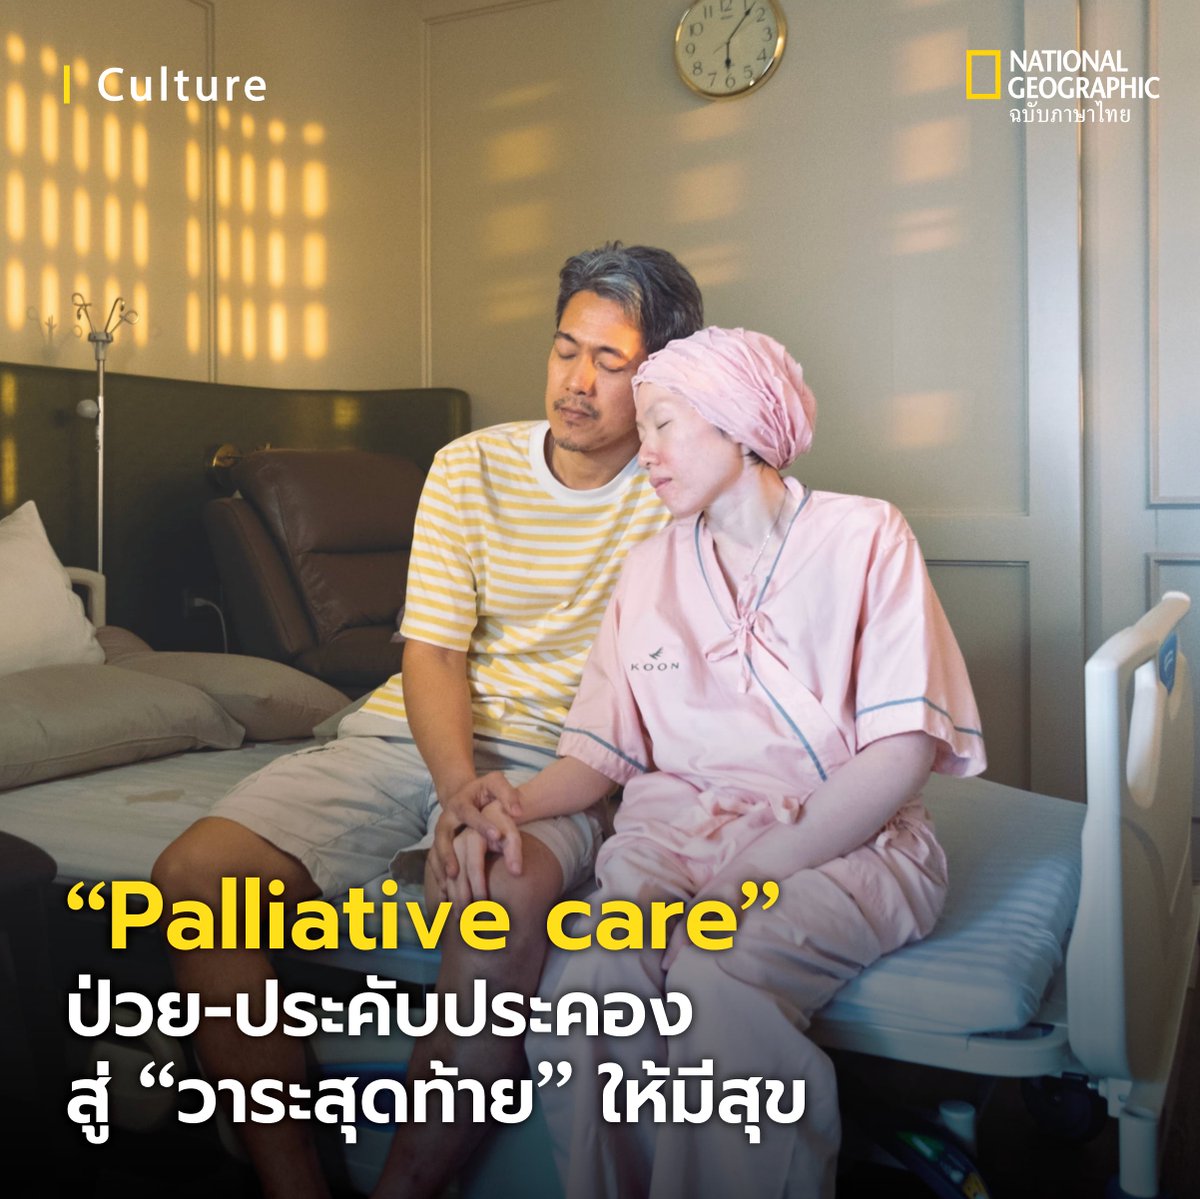 'การดูแลแบบประคับประคอง' หรือ Palliative care - เลิกรบรากับโรคร้าย สู่วาระสุดท้ายเป็นสุข ในประเทศไทย
.
การดูแลแบบประคับประคอง หรือ “แพลเลียทีฟแคร์” (palliative care) เป็นแนวทางการรักษาที่กำลังได้รับการพูดถึงมากขึ้นในสังคมไทย โดยมุ่งให้ความสำคัญกับคุณภาพชีวิตของผู้ป่วยระยะท้าย